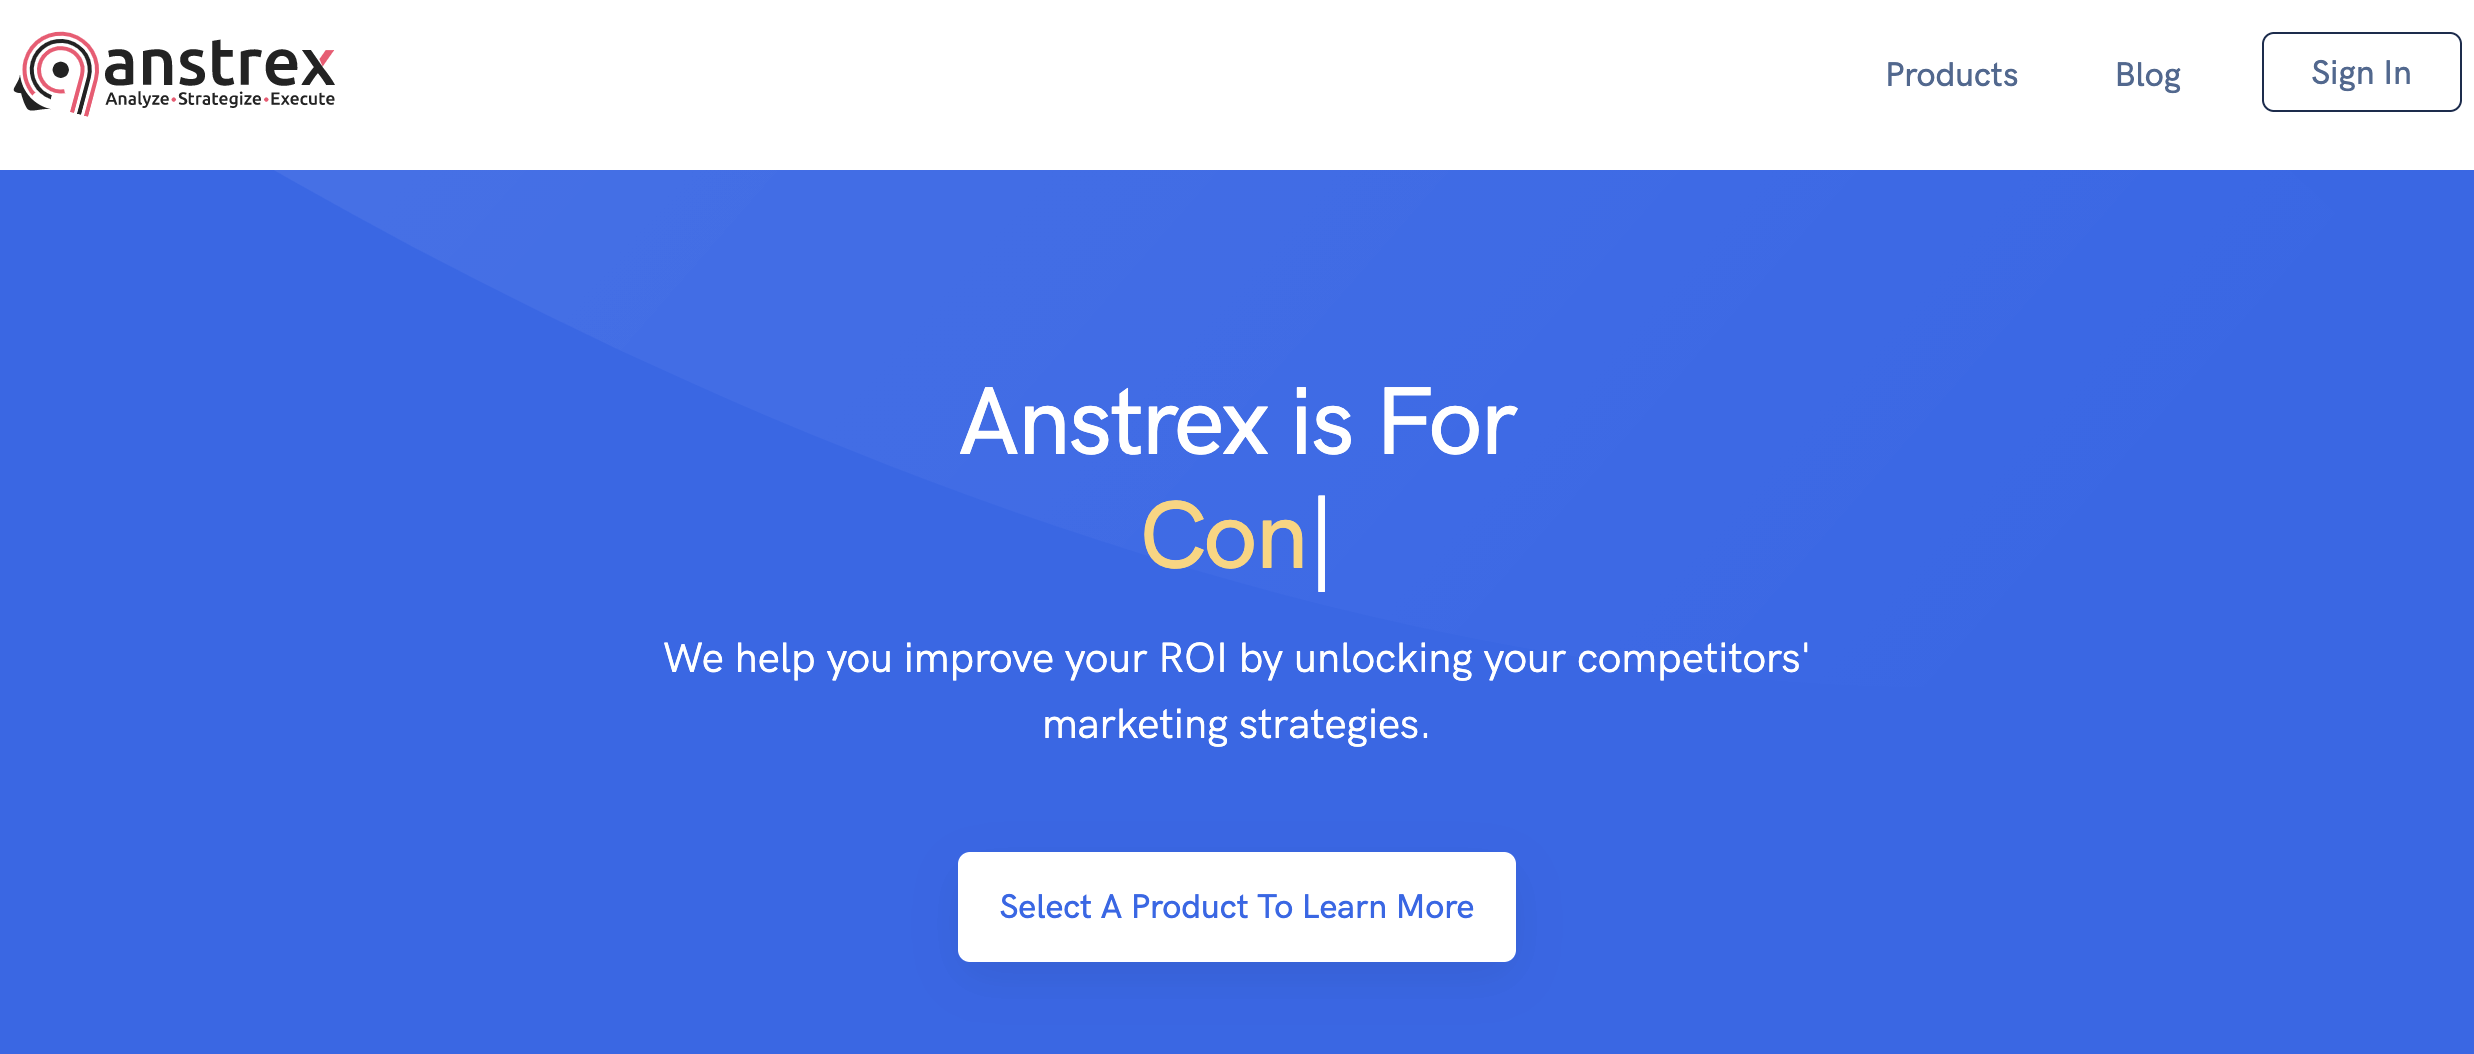 Anstrex官网8折优惠码-Anstrex,比Adplexity还好用的Spy工具,团购,独享账号